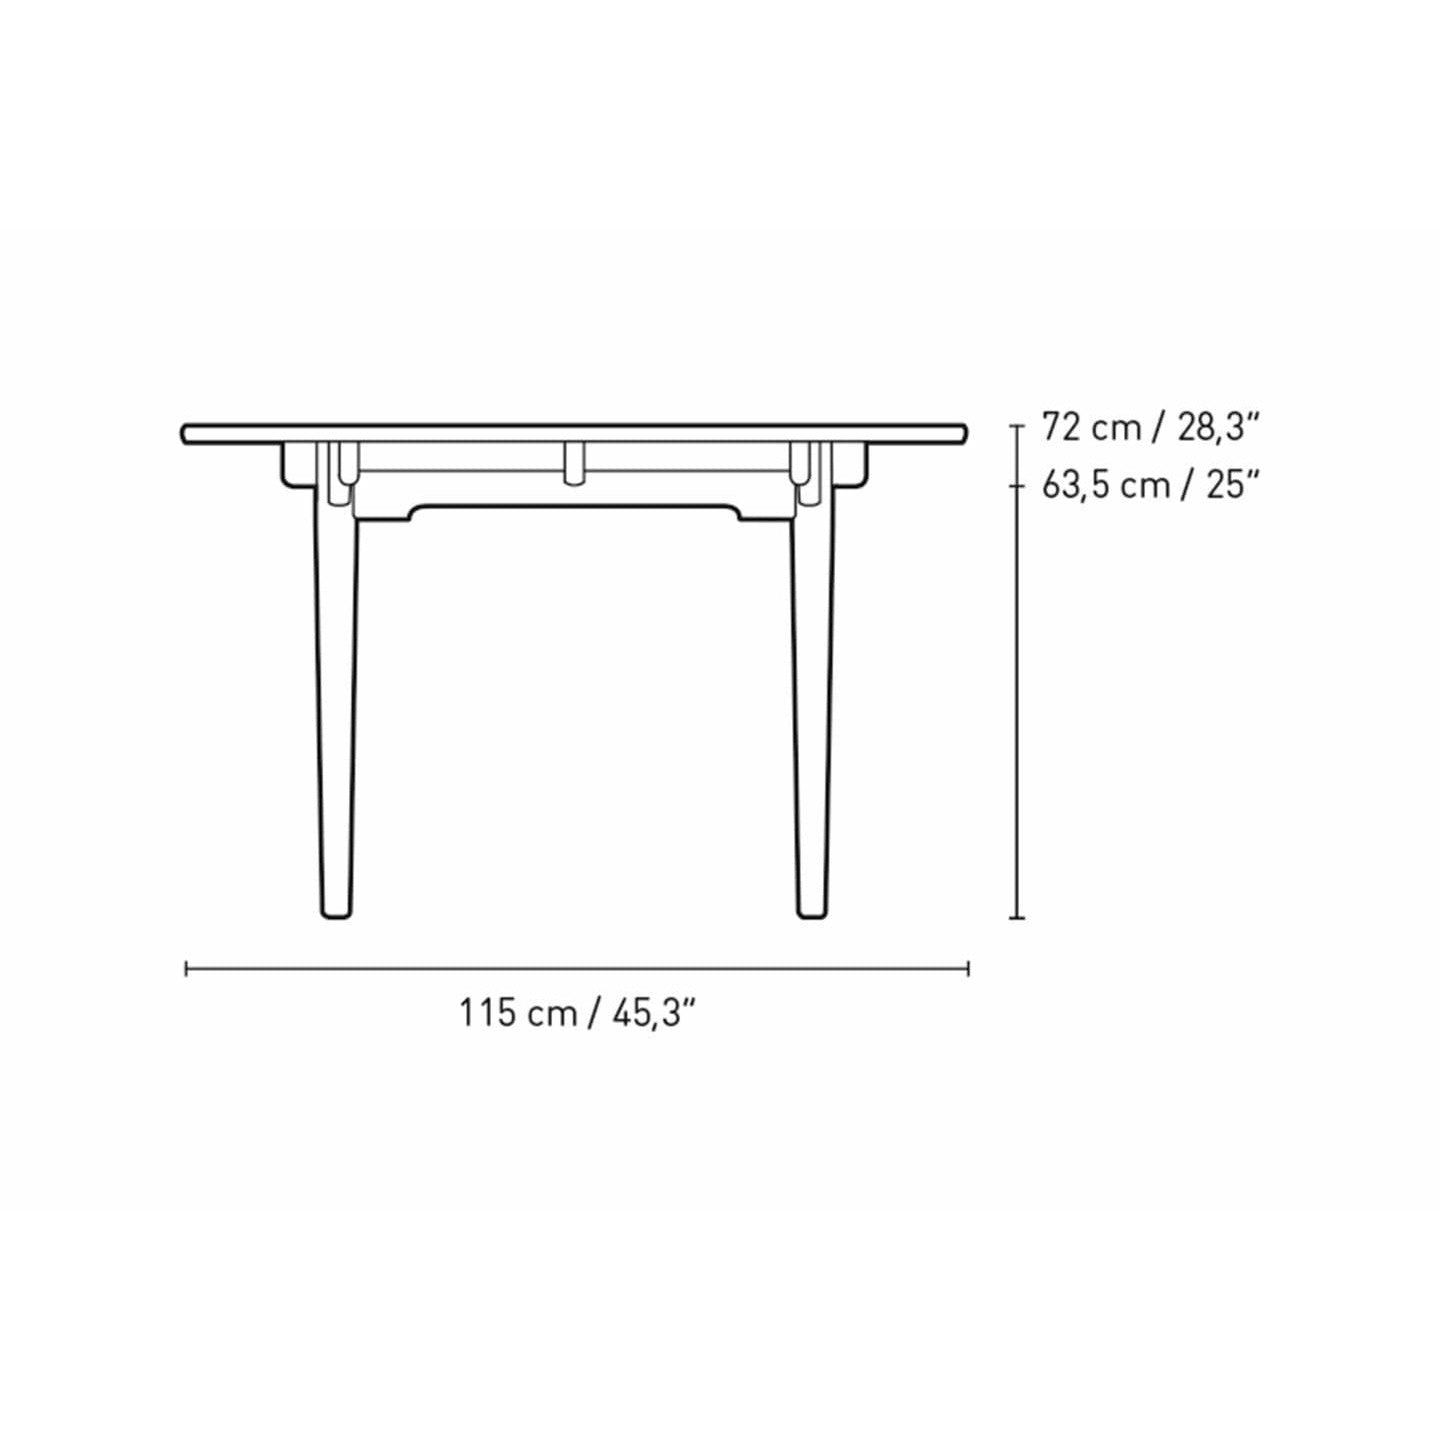 Carl Hansen CH339 matbord med dragning för 4 plattor, ekolja